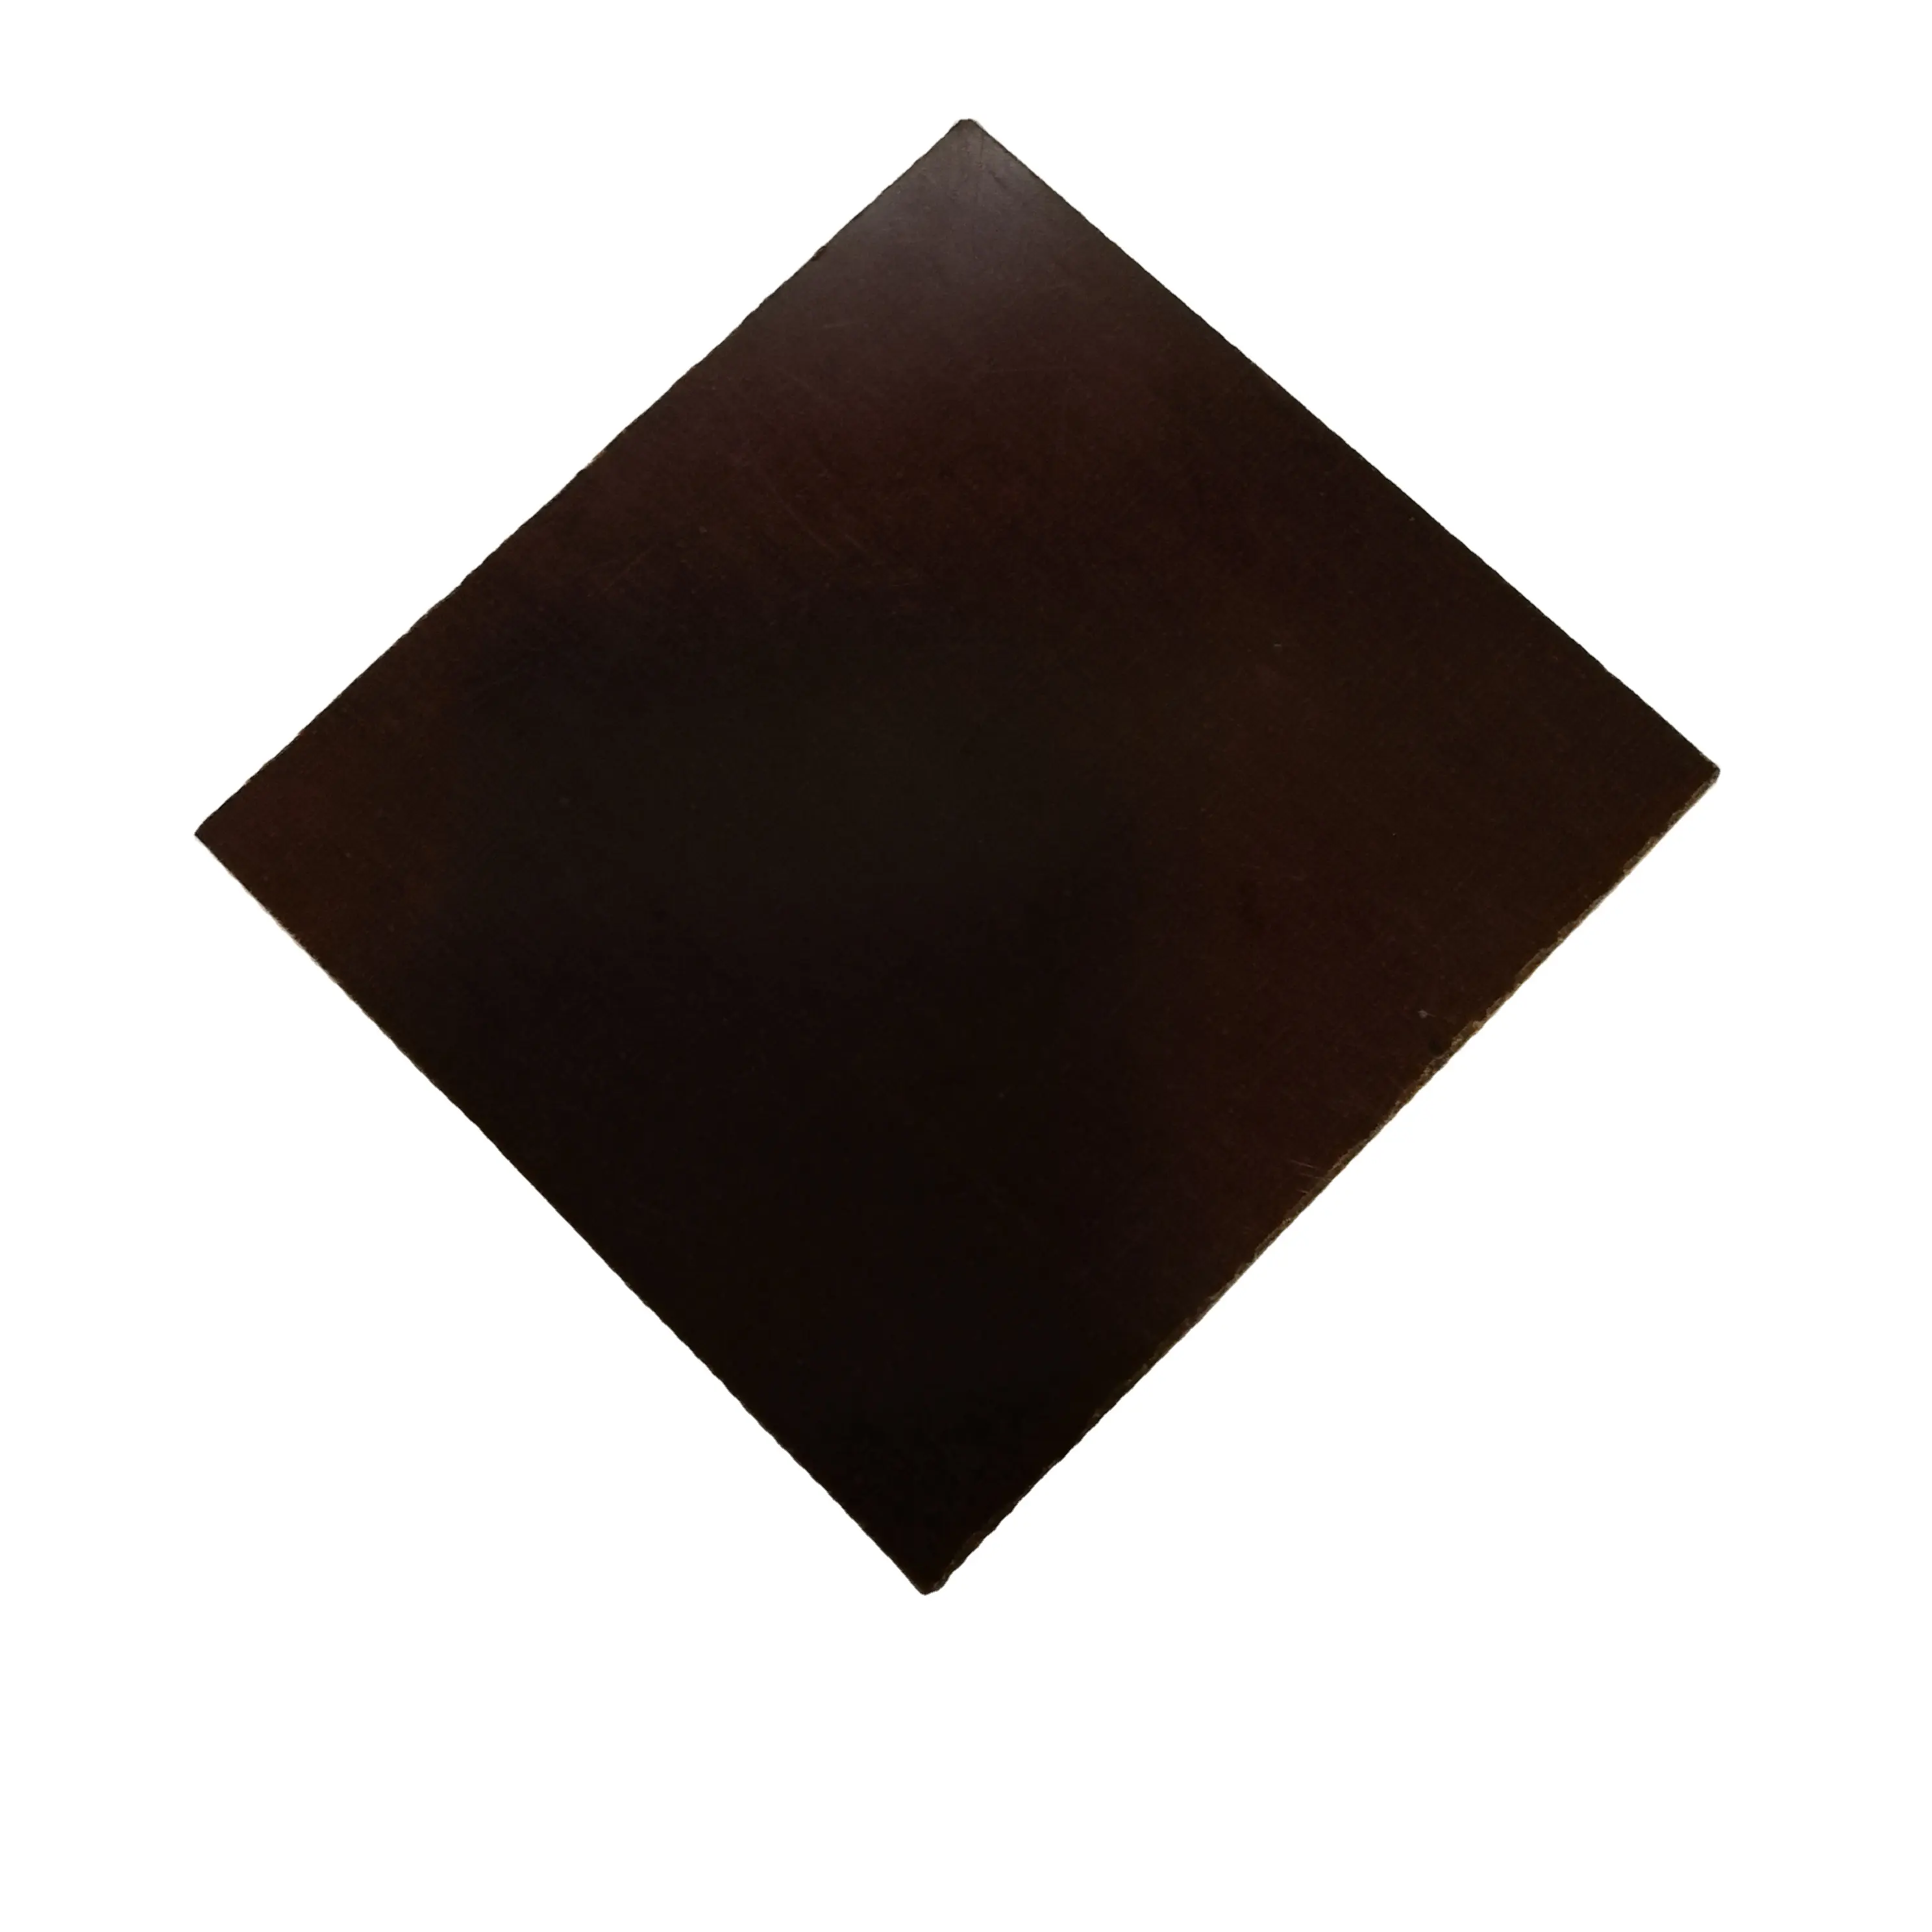 Piatto in bachelite nera foglio di carta fenolica in bachelite 3021 3025 foglio/cartone in tessuto di cotone in resina fenolica